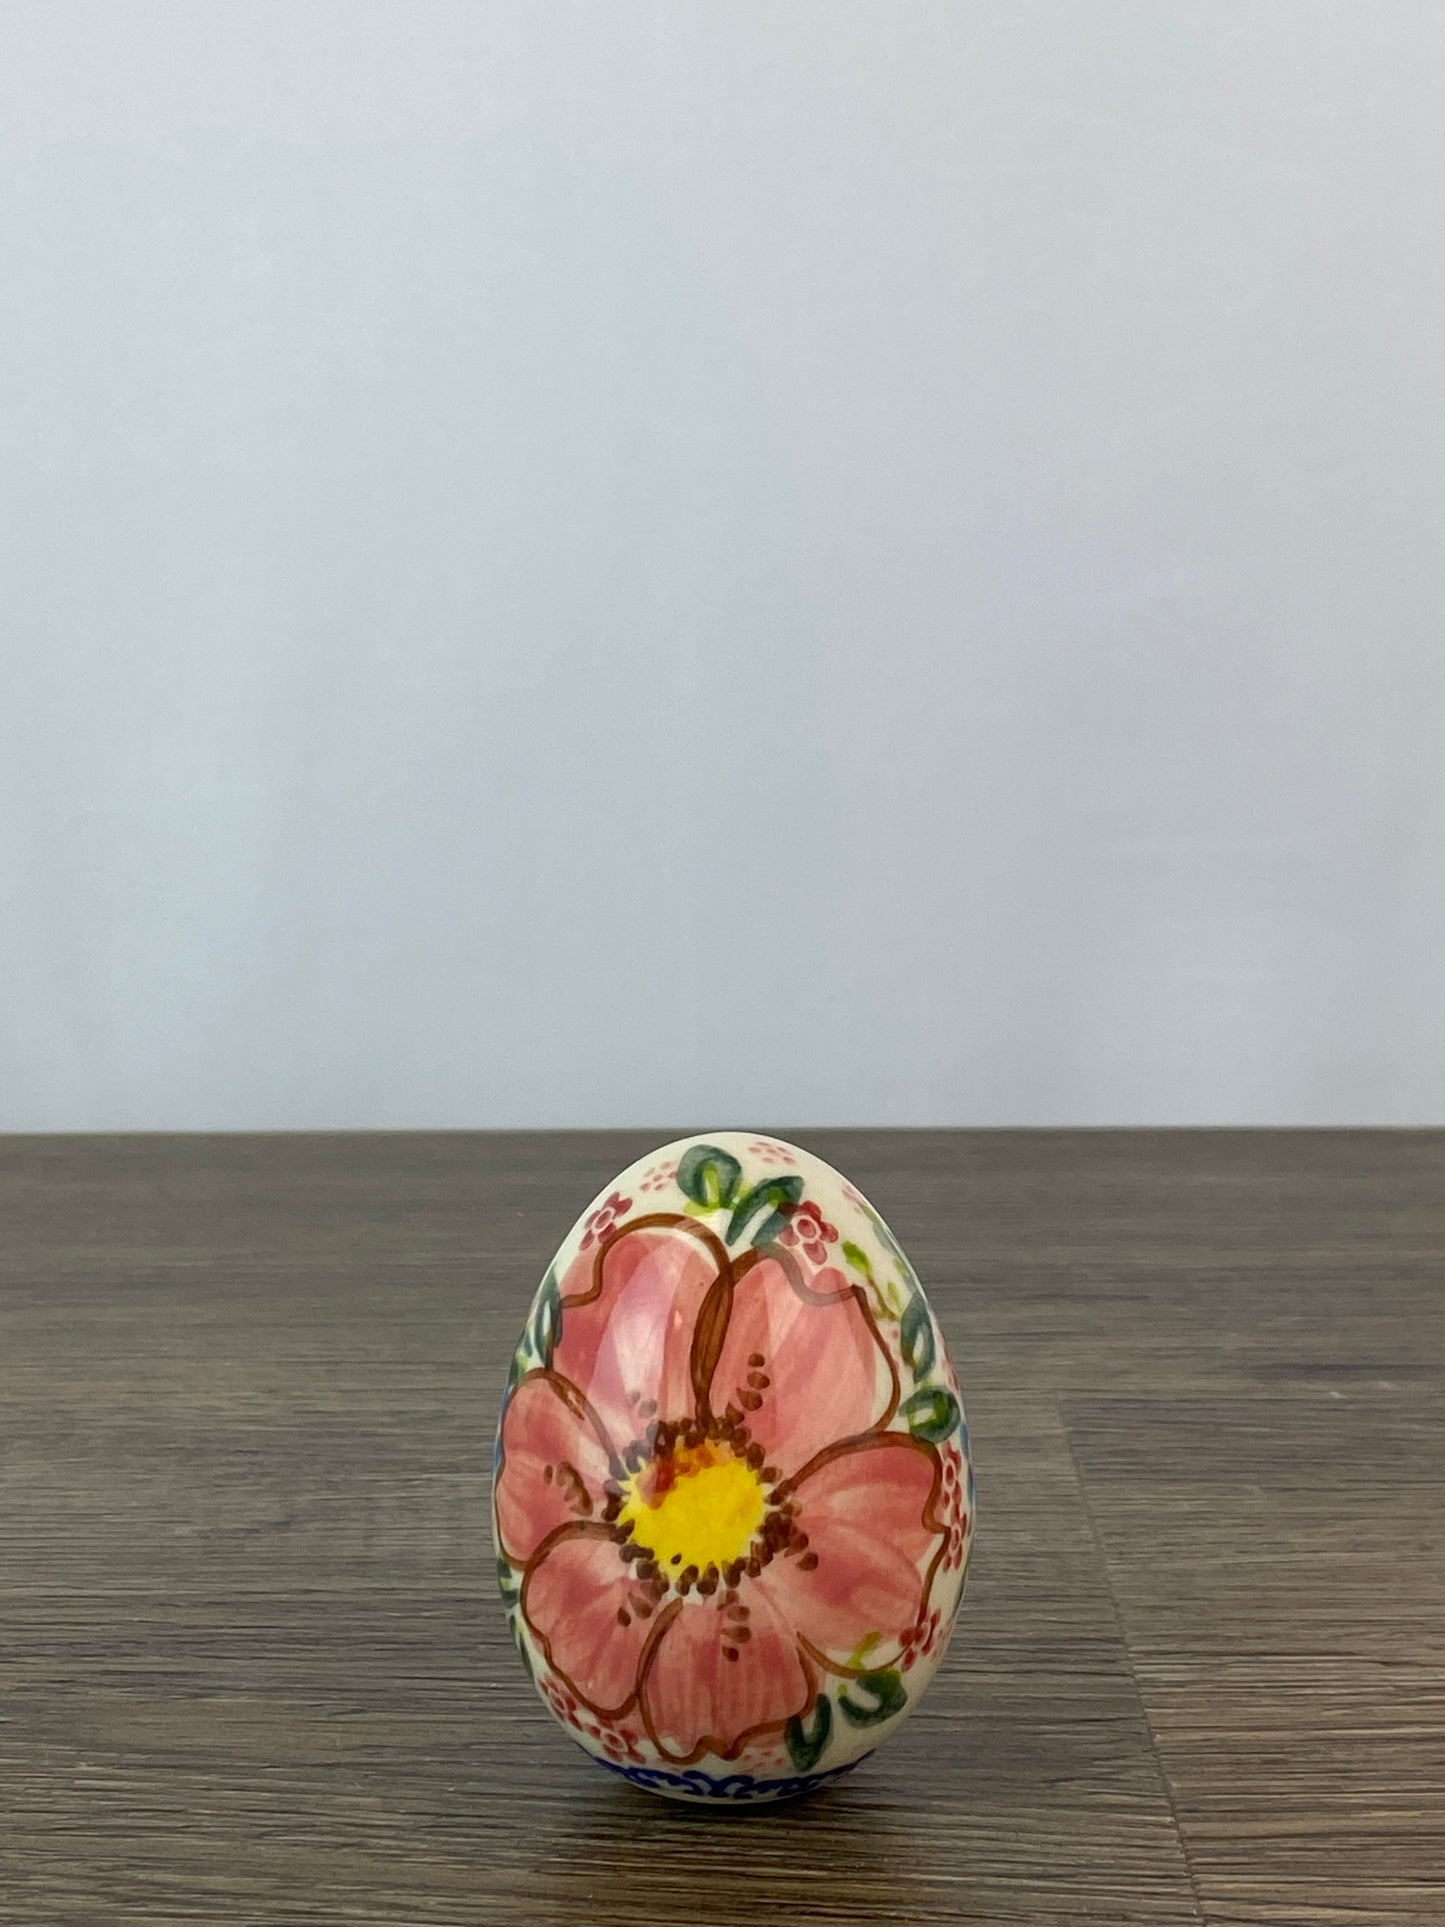 Vena Large Ceramic Easter Egg - Shape V037 - Pattern A509